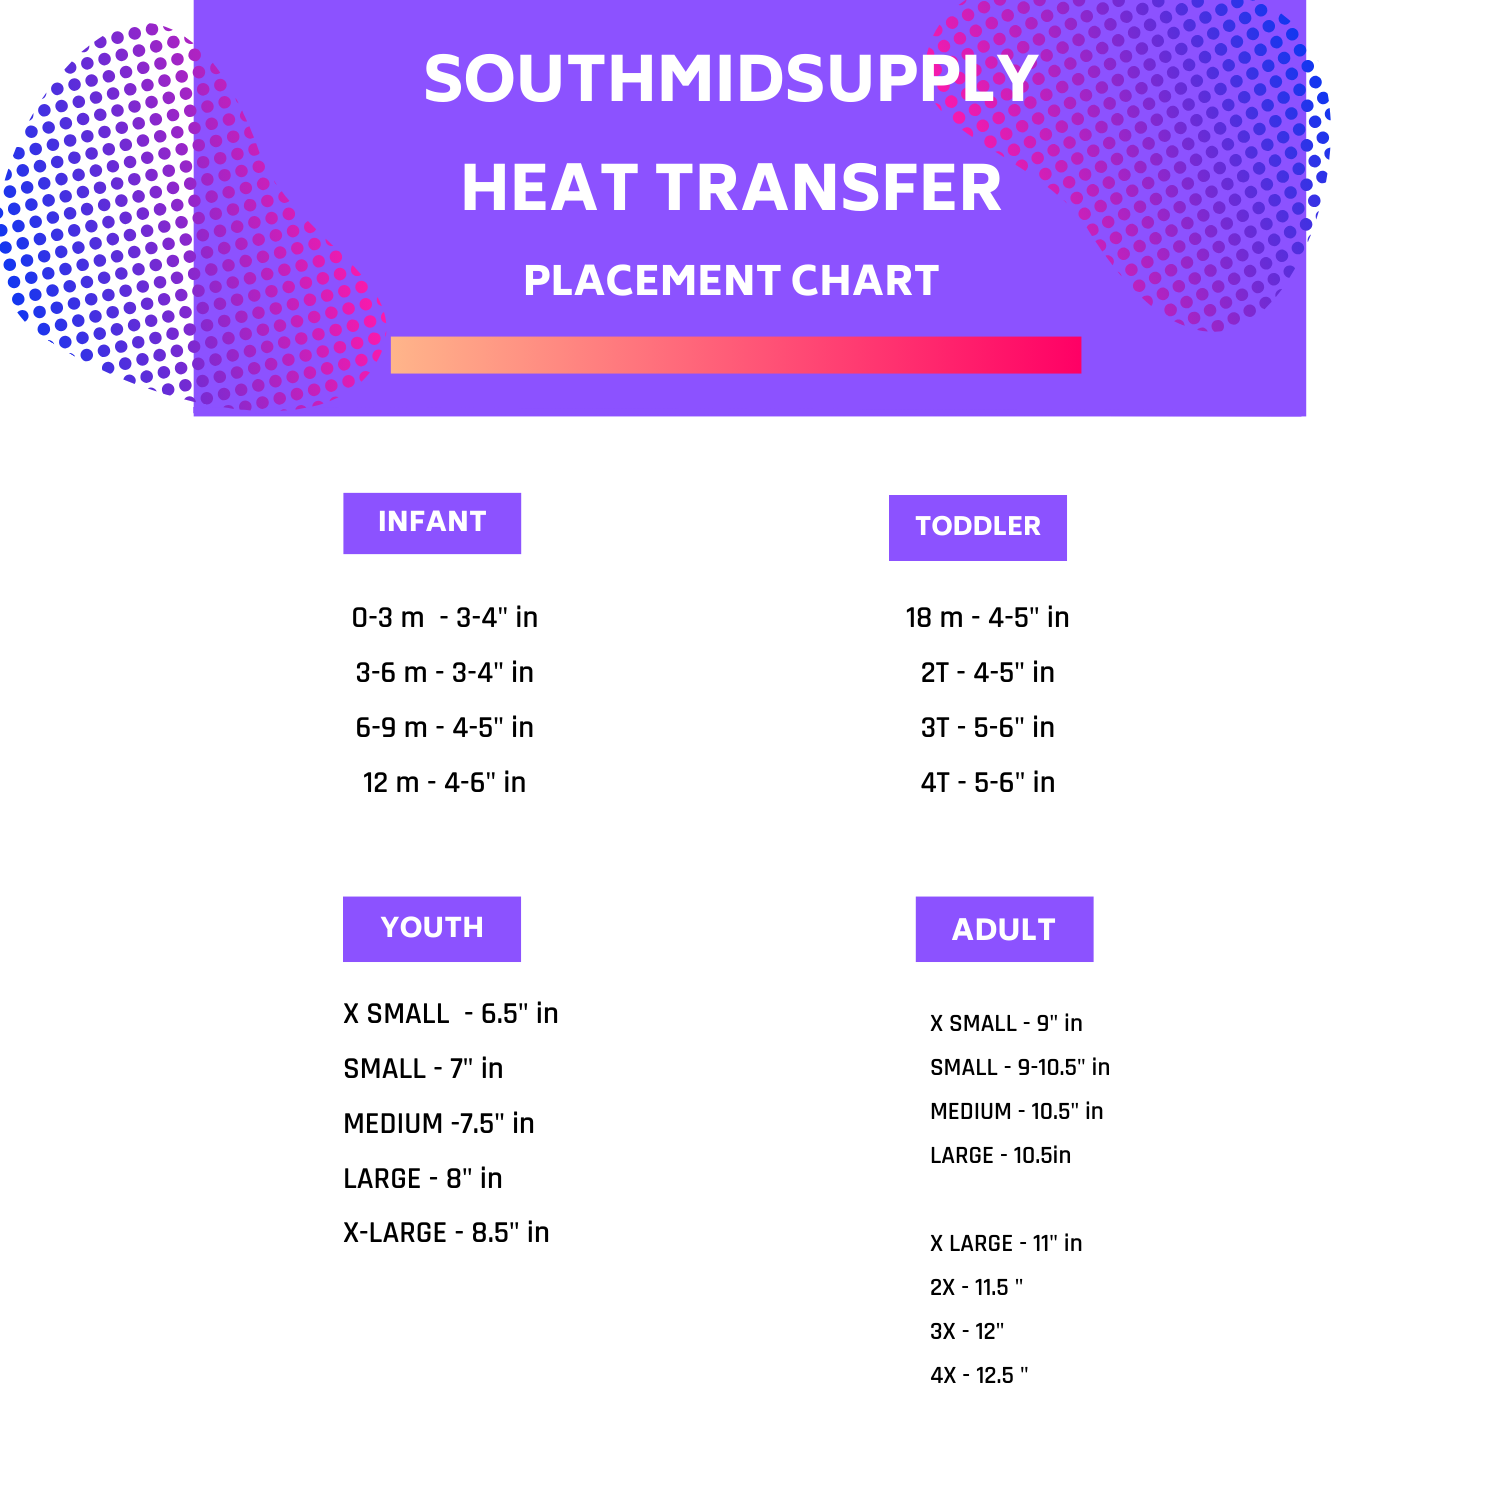 Southmidsupply.com